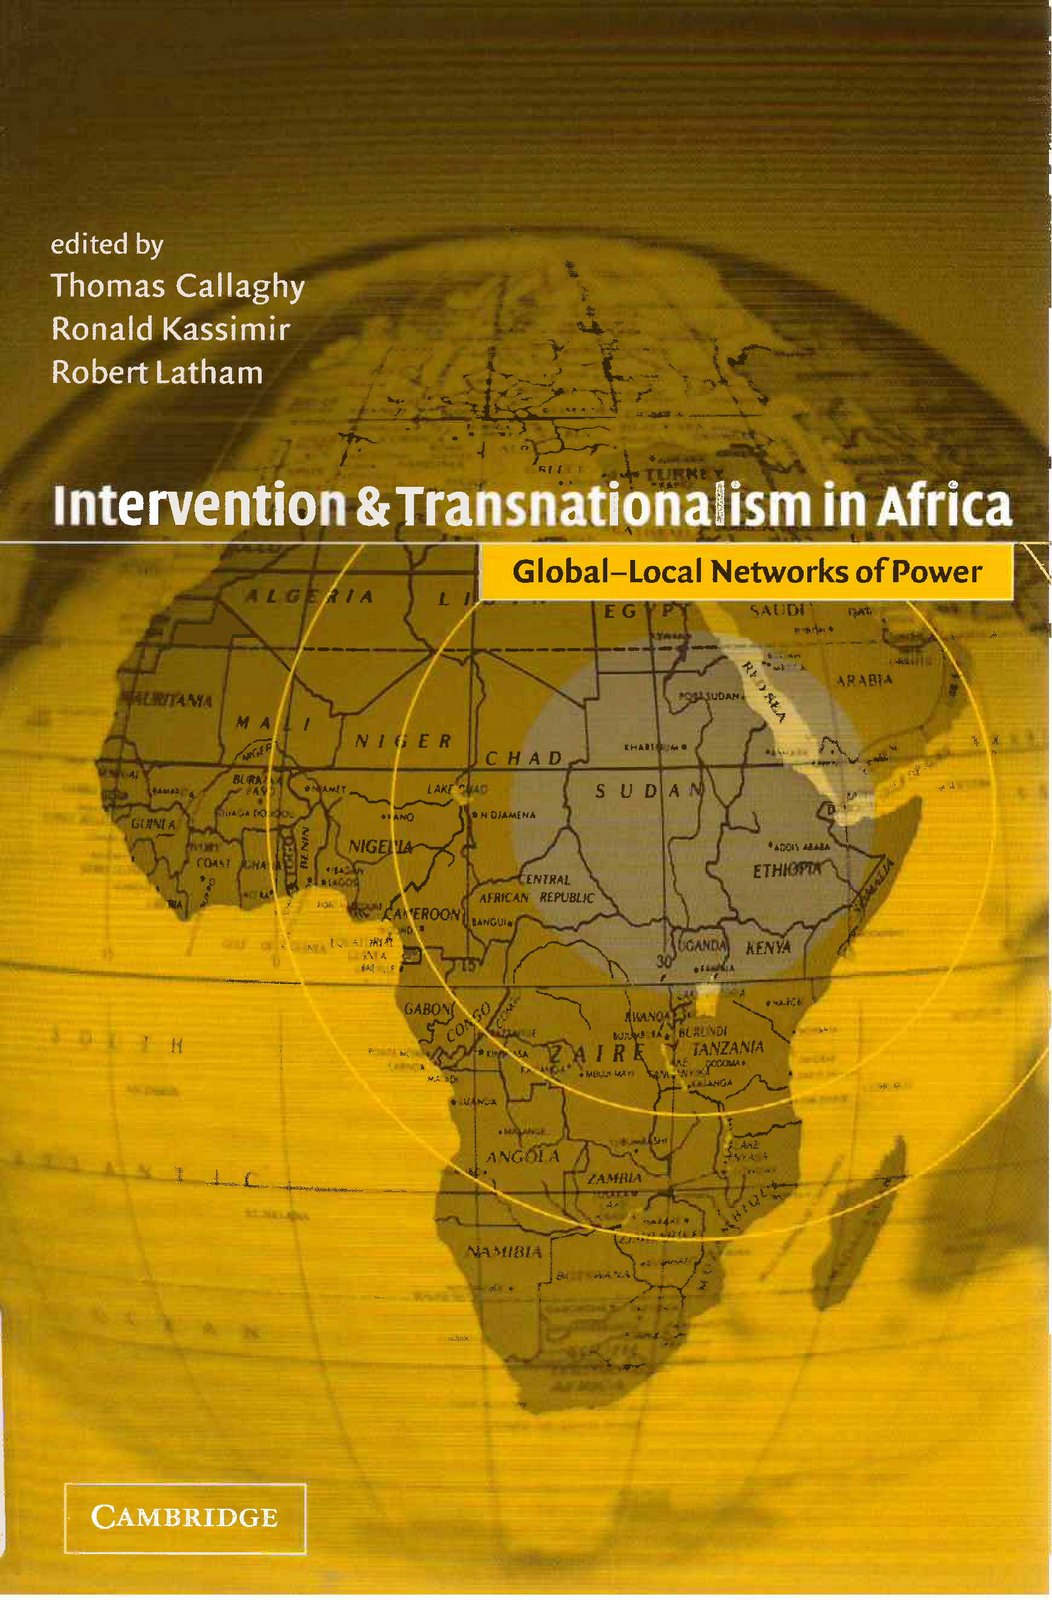 [intervention+&+transnationalaism+in+africa.jpg]